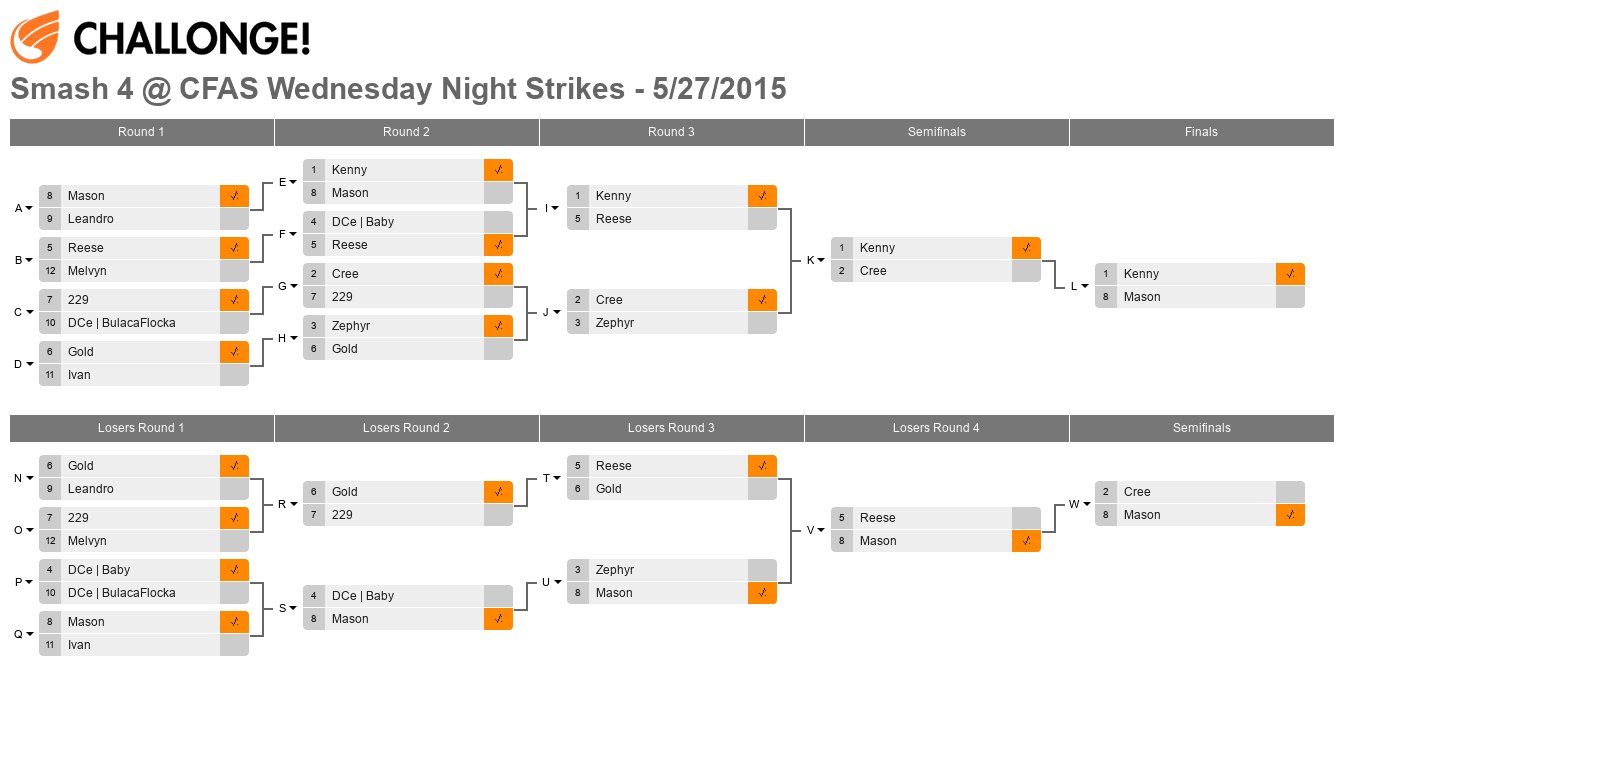 Smash 4 @ CFAS Wednesday Night Strikes - 5/27/2015